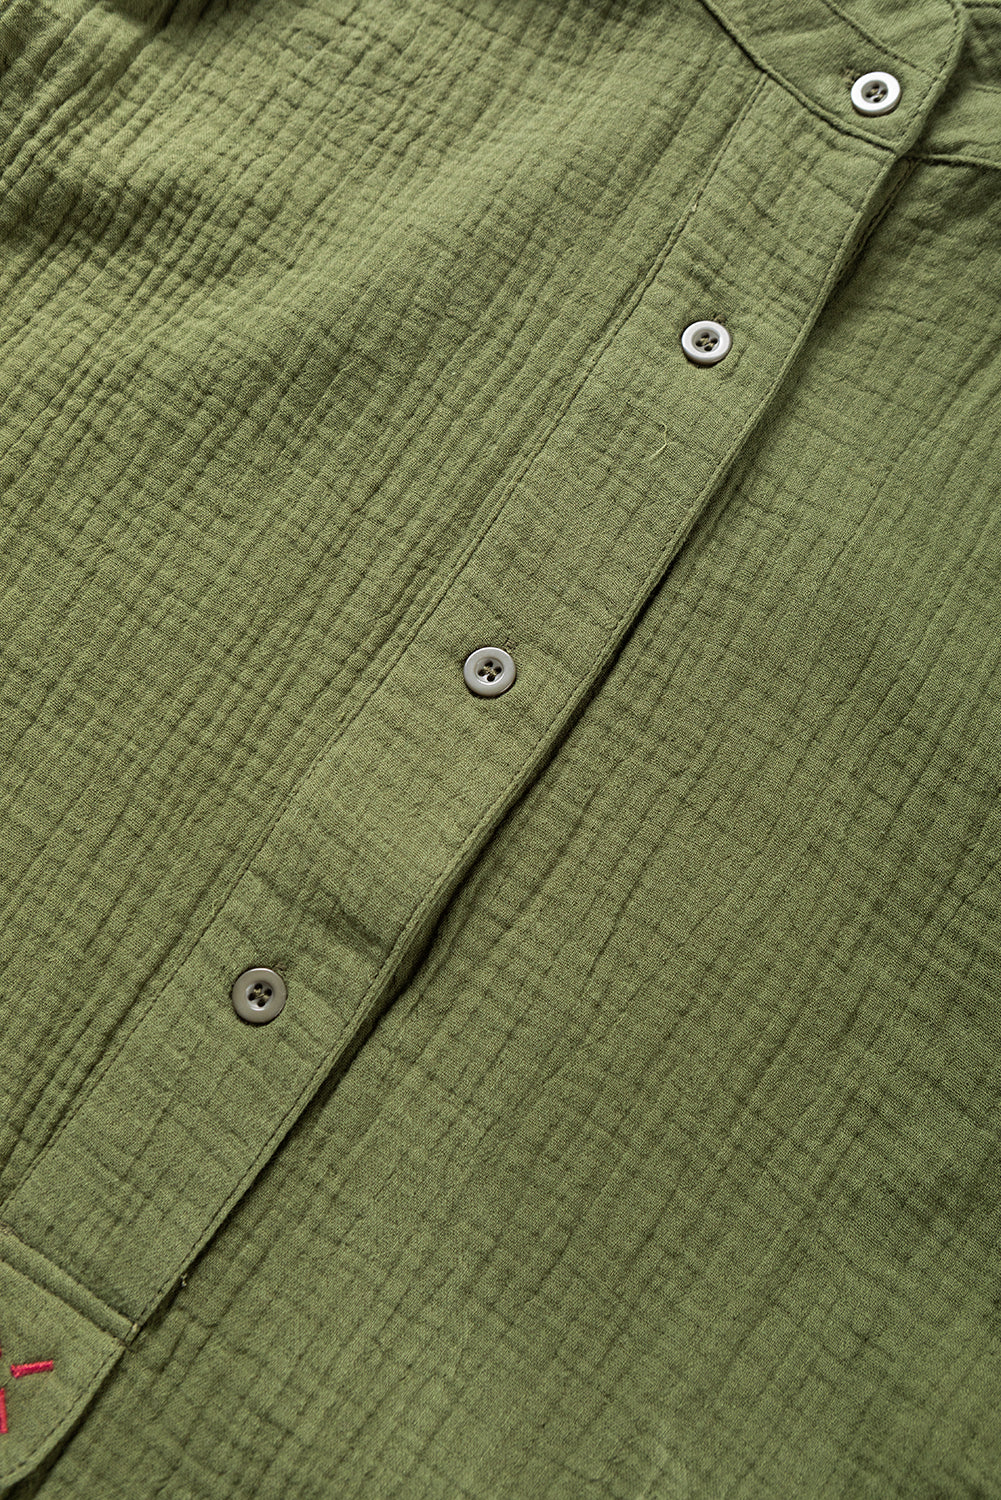 Strukturiertes, geknöpftes Hemd mit langen Ärmeln in Dschungelgrün mit Crinkle-Struktur